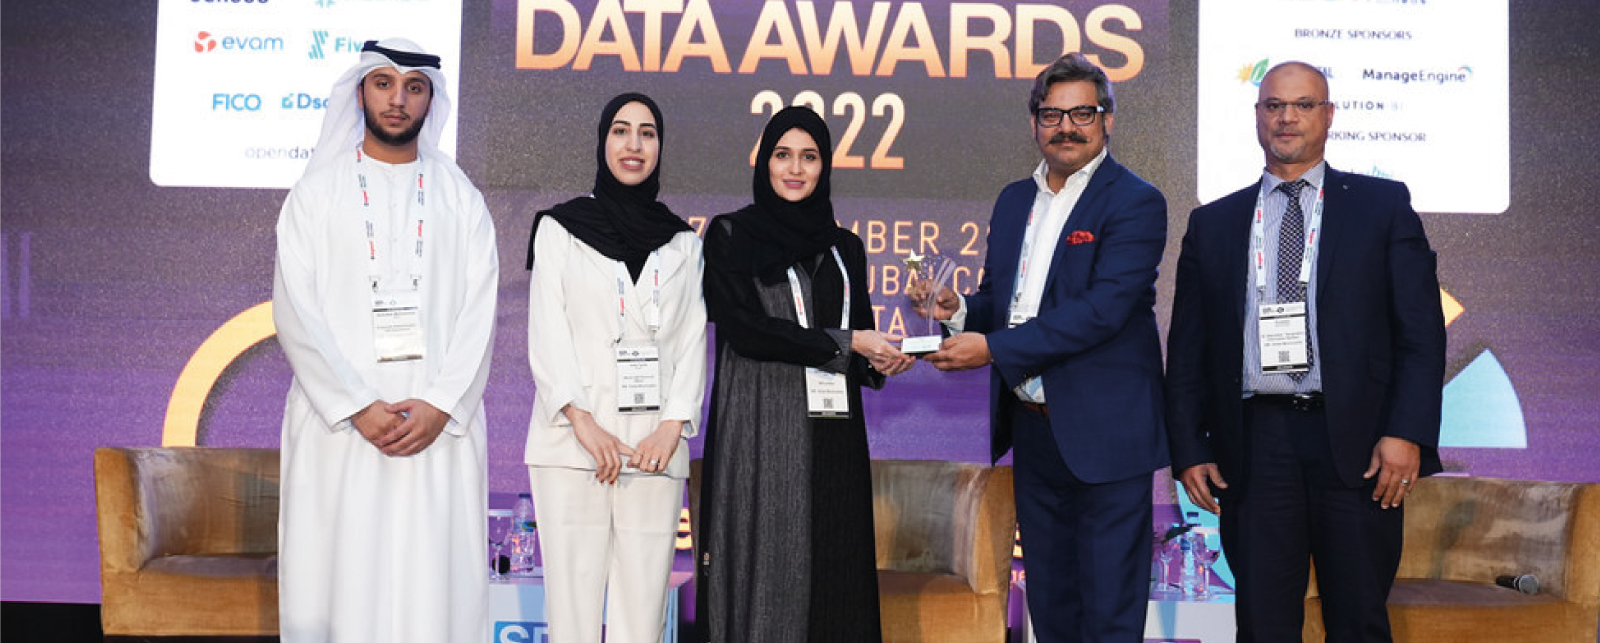 جائزة بطل البيانات الذكية نوفمبر 2022